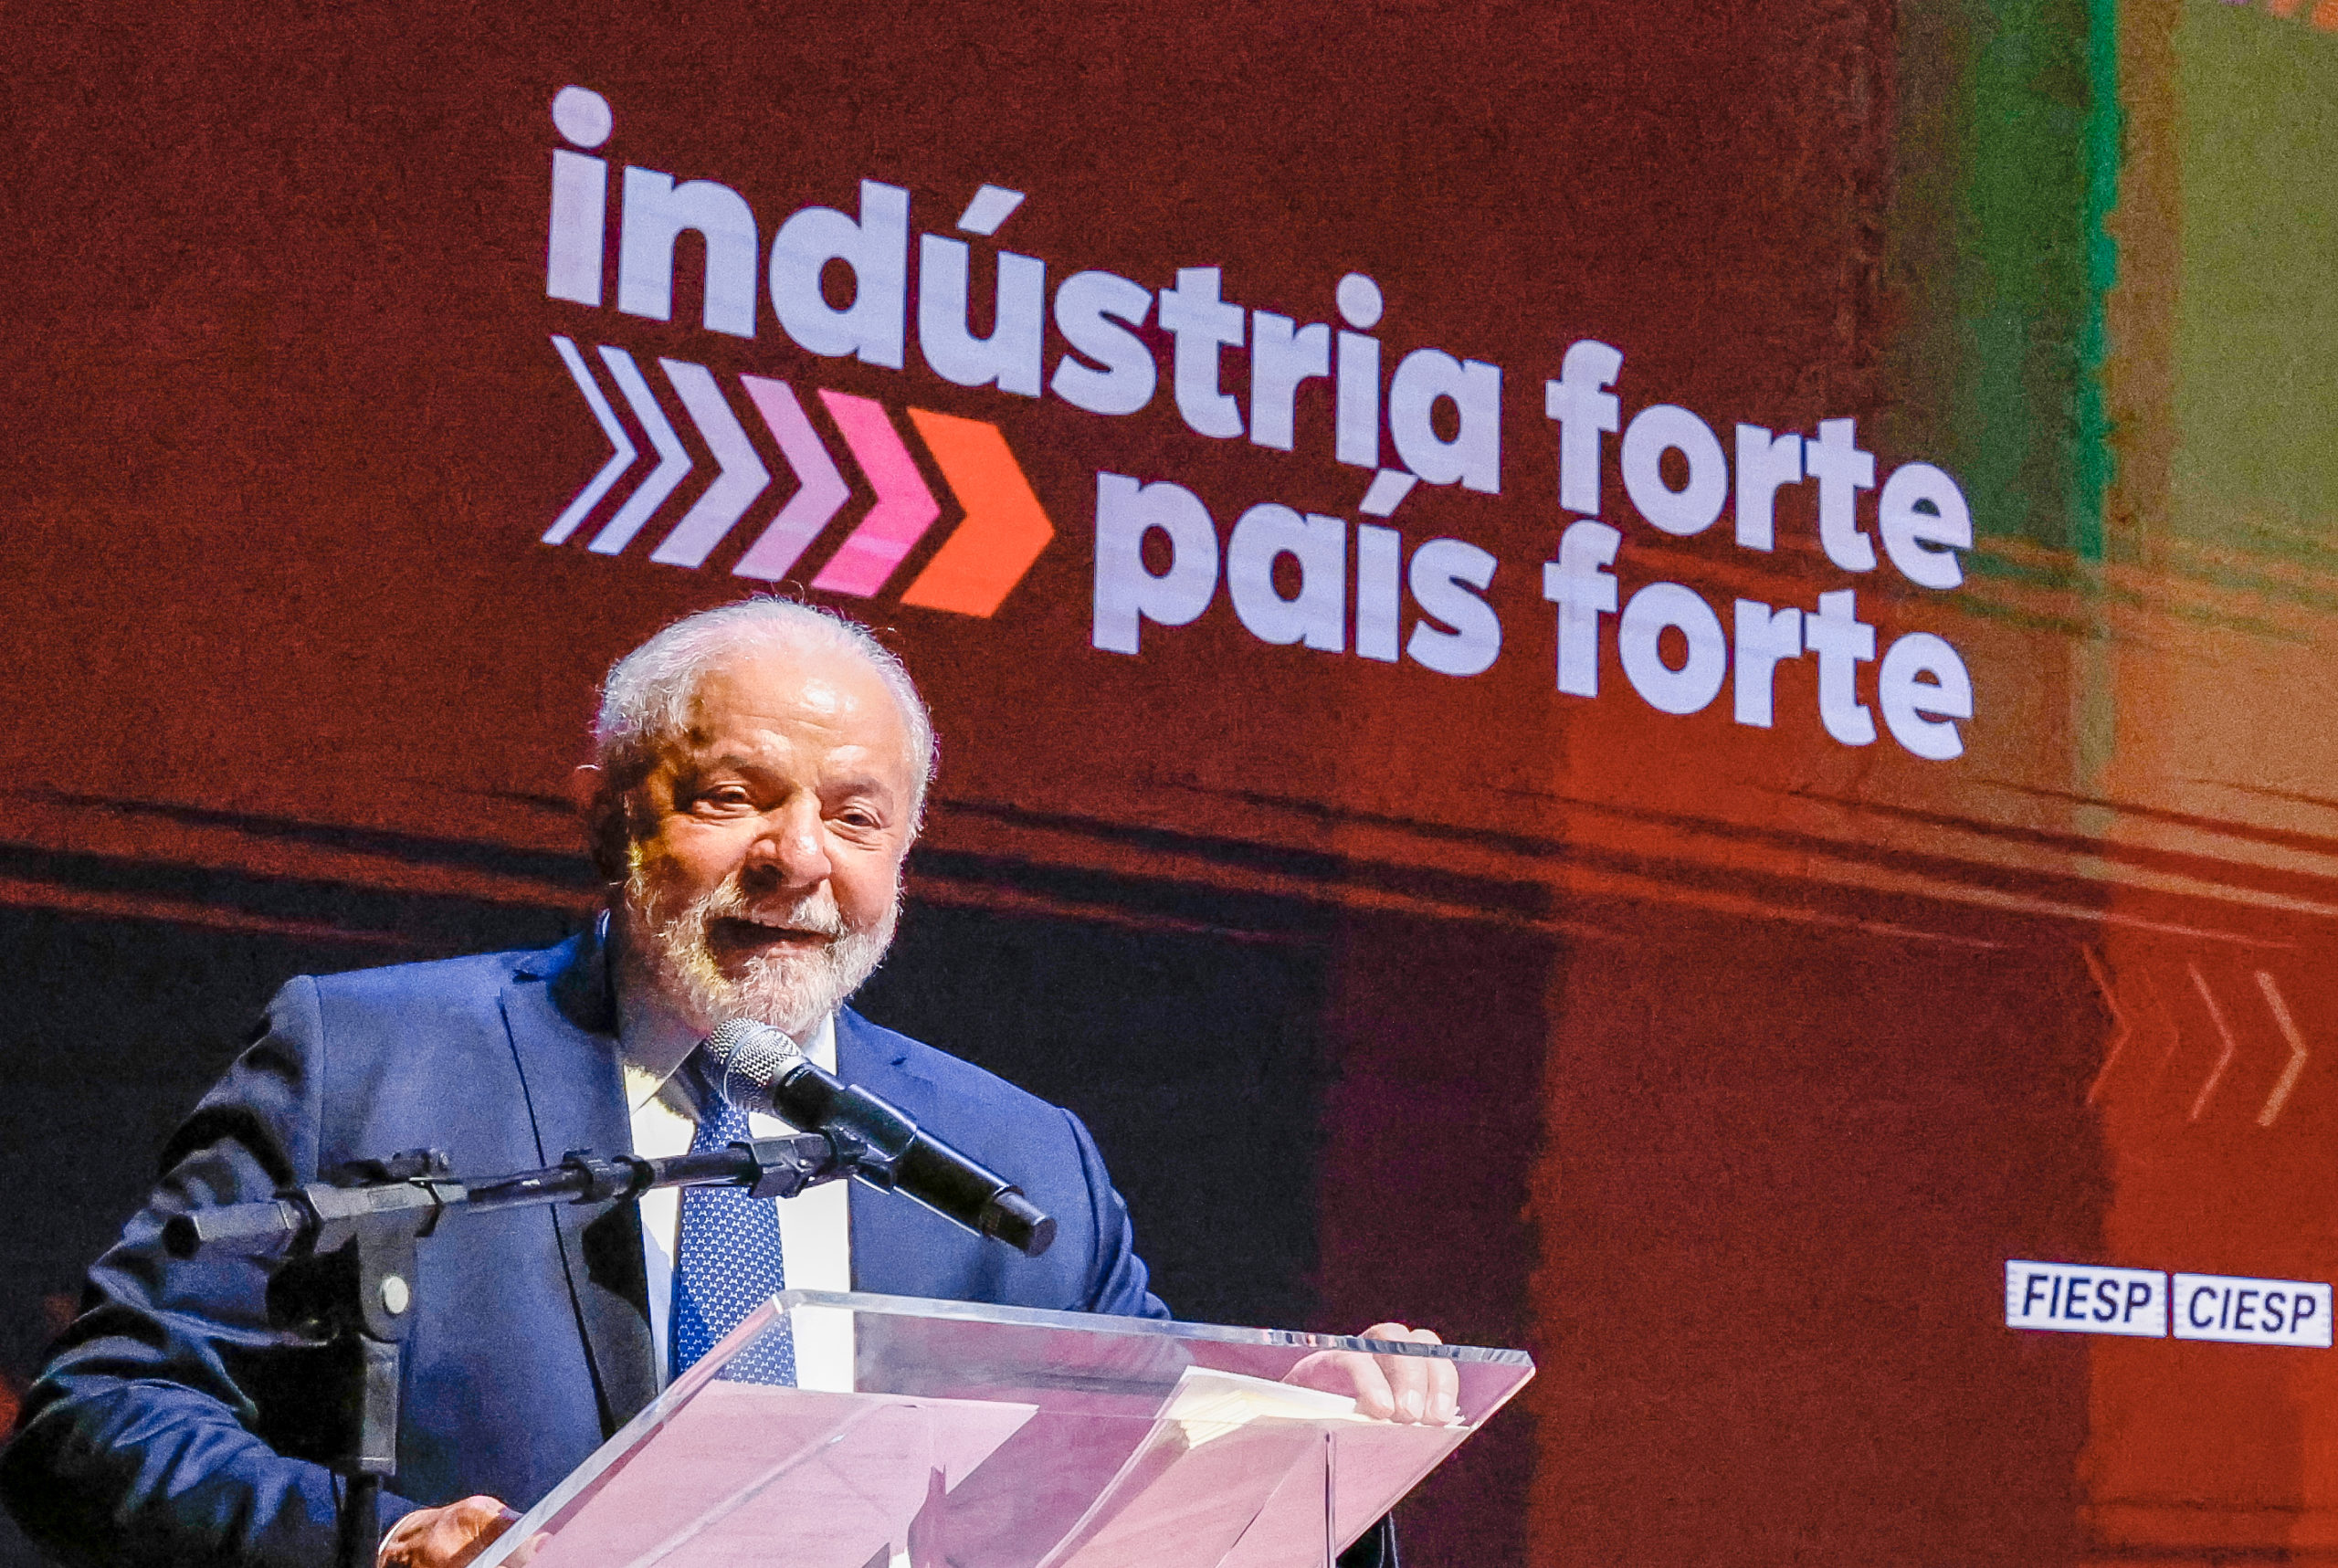 Lula diz que não vai ceder compras governamentais em acordo Mercosul-UE. Na imagem: Presidente Lula (PT) durante encerramento do evento em homenagem ao Dia da Indústria na Fiesp, em 25/5/23 (Foto: Ricardo Stuckert/PR)